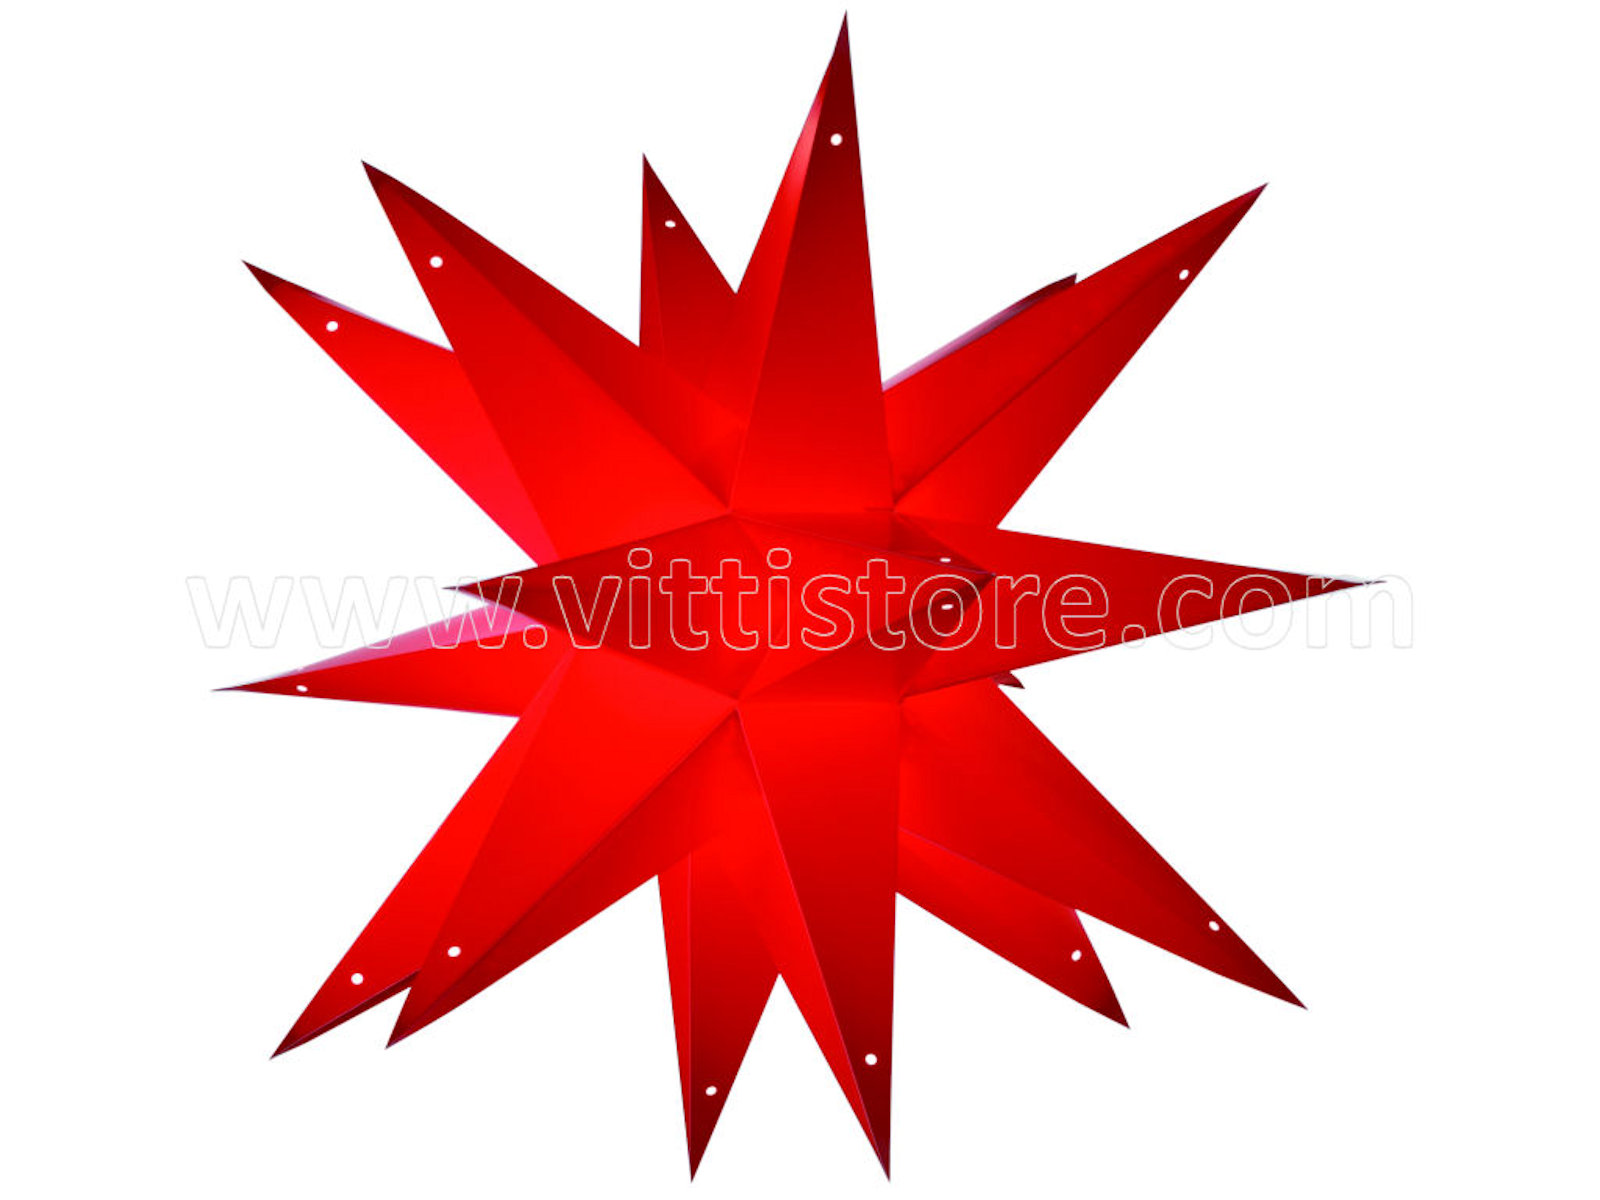 Bild von starlightz taara red earth friendly Leuchtstern